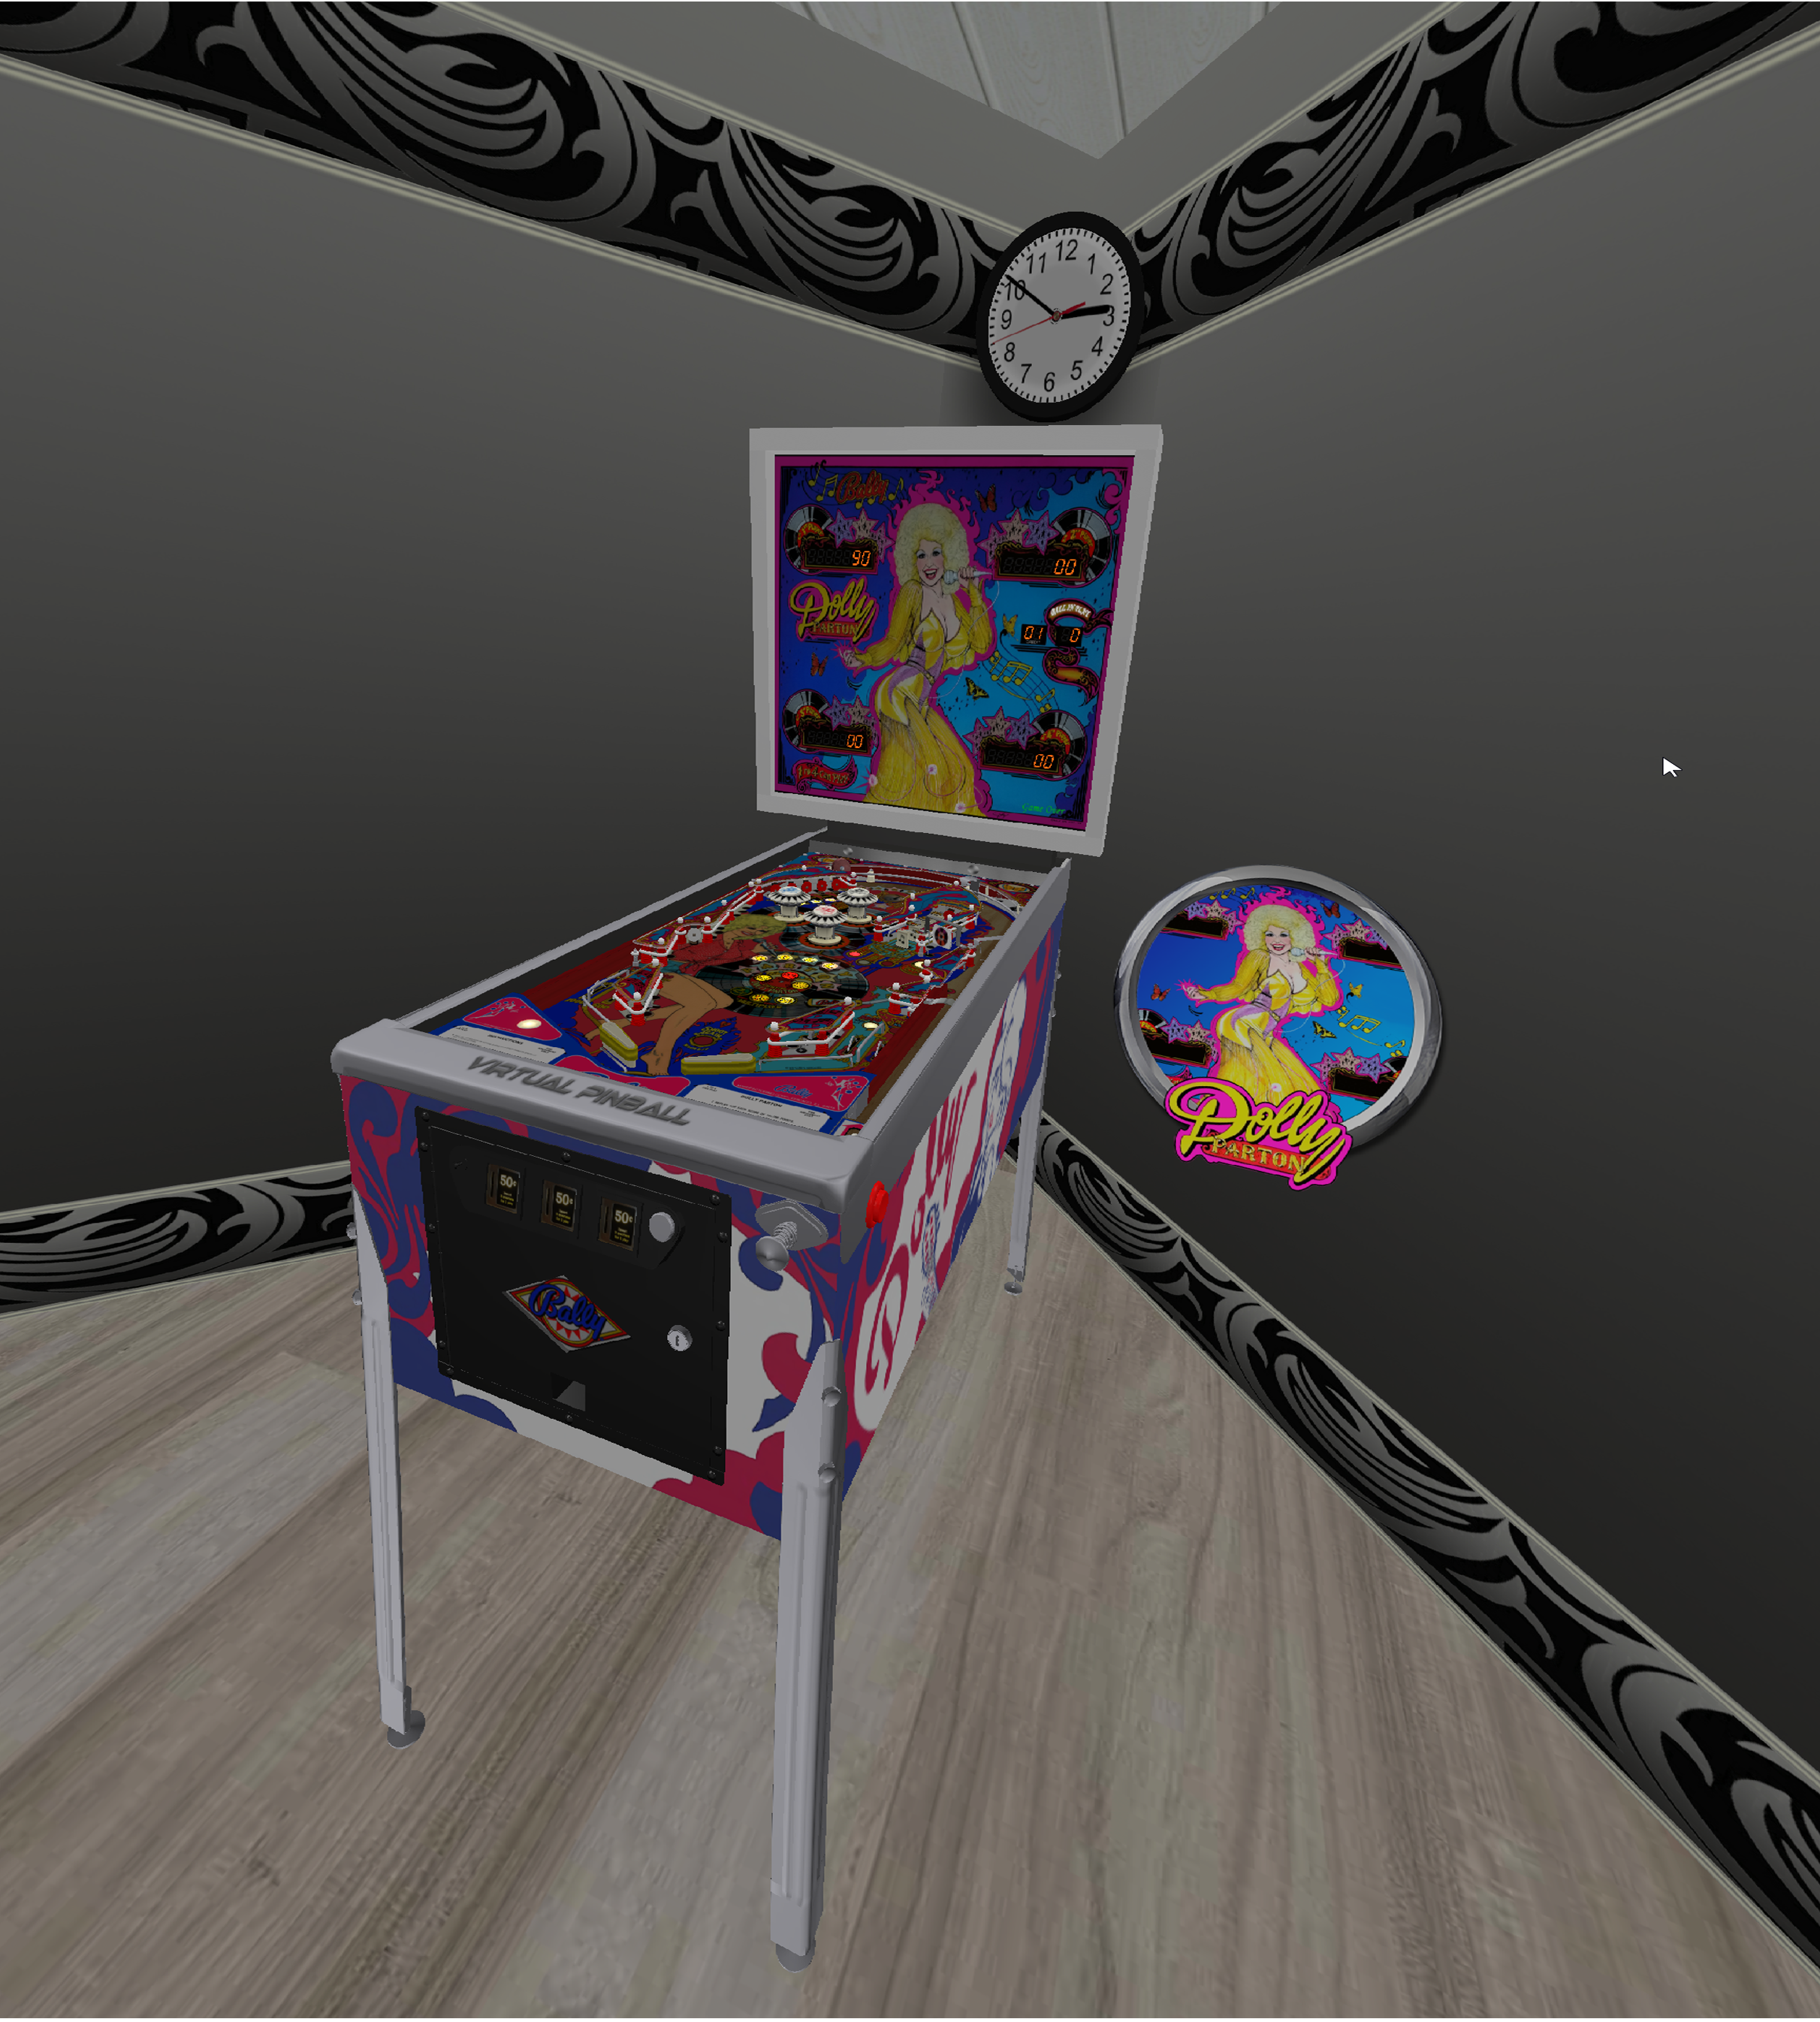 VR Room Dolly Parton (Bally 1979) 1.0.0